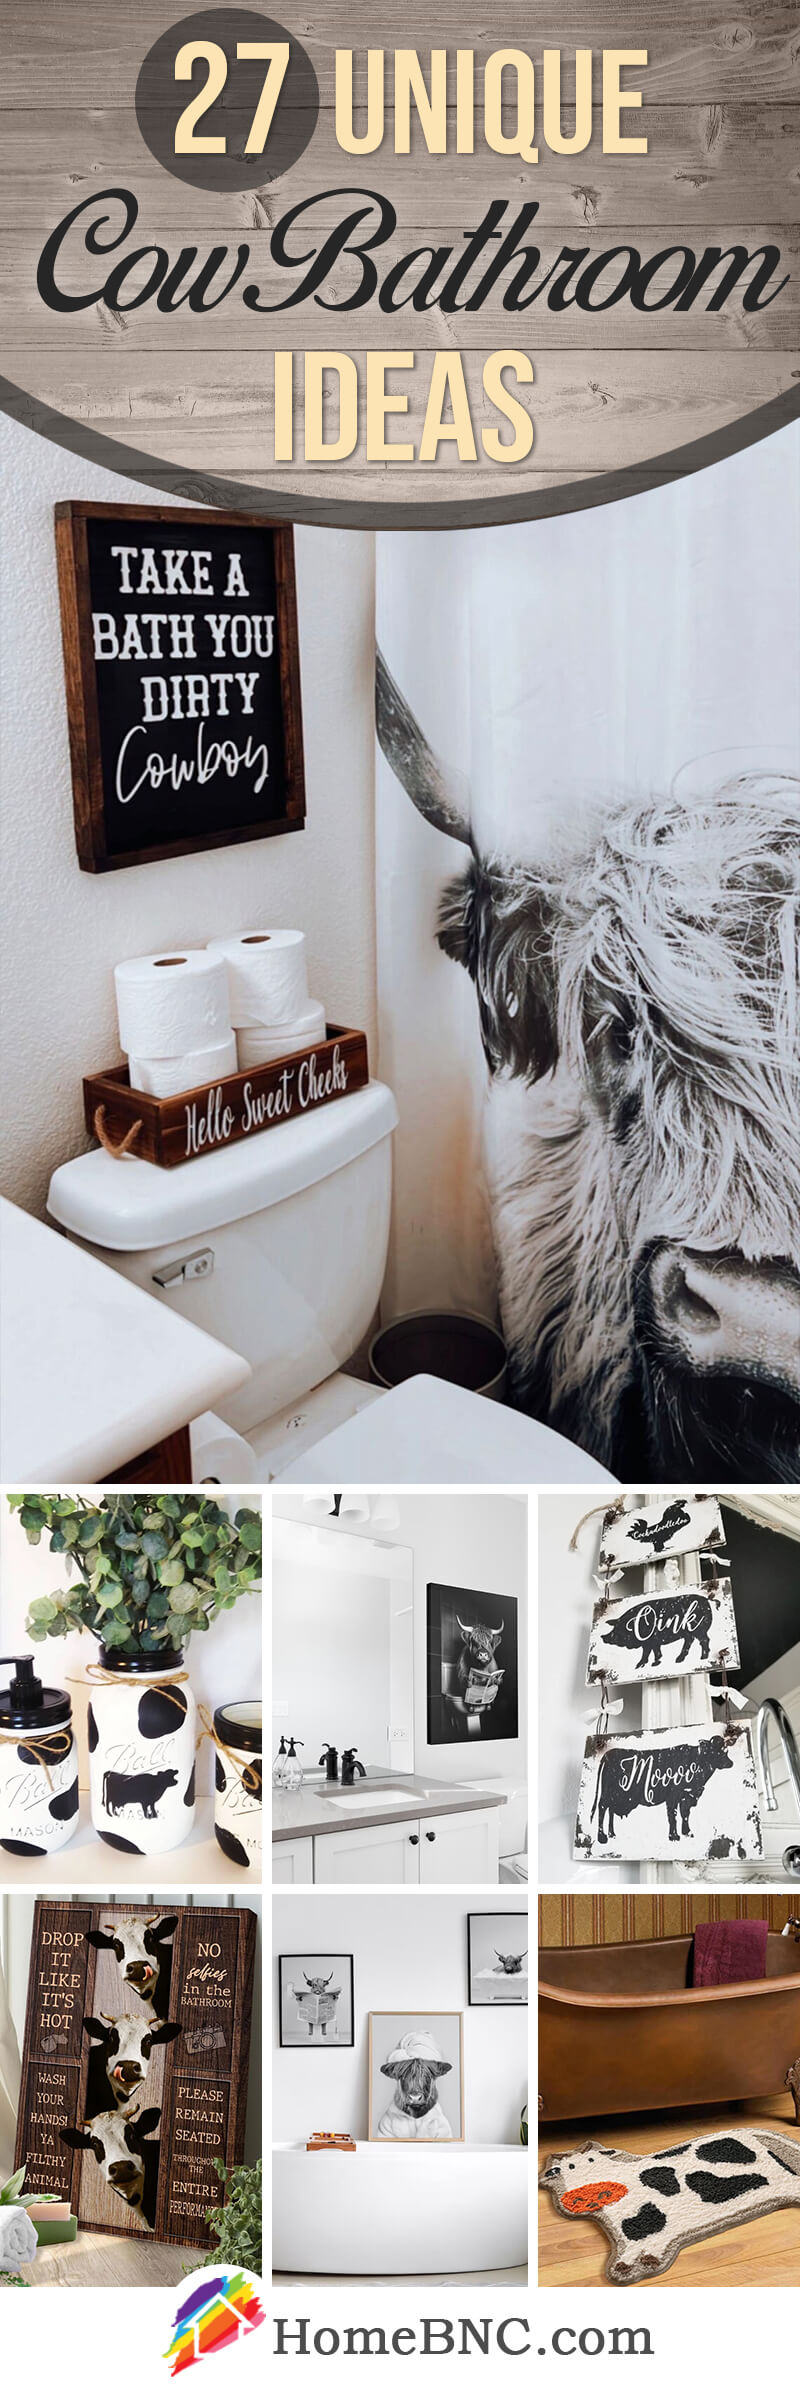 Cow Bathroom Decor Ideas